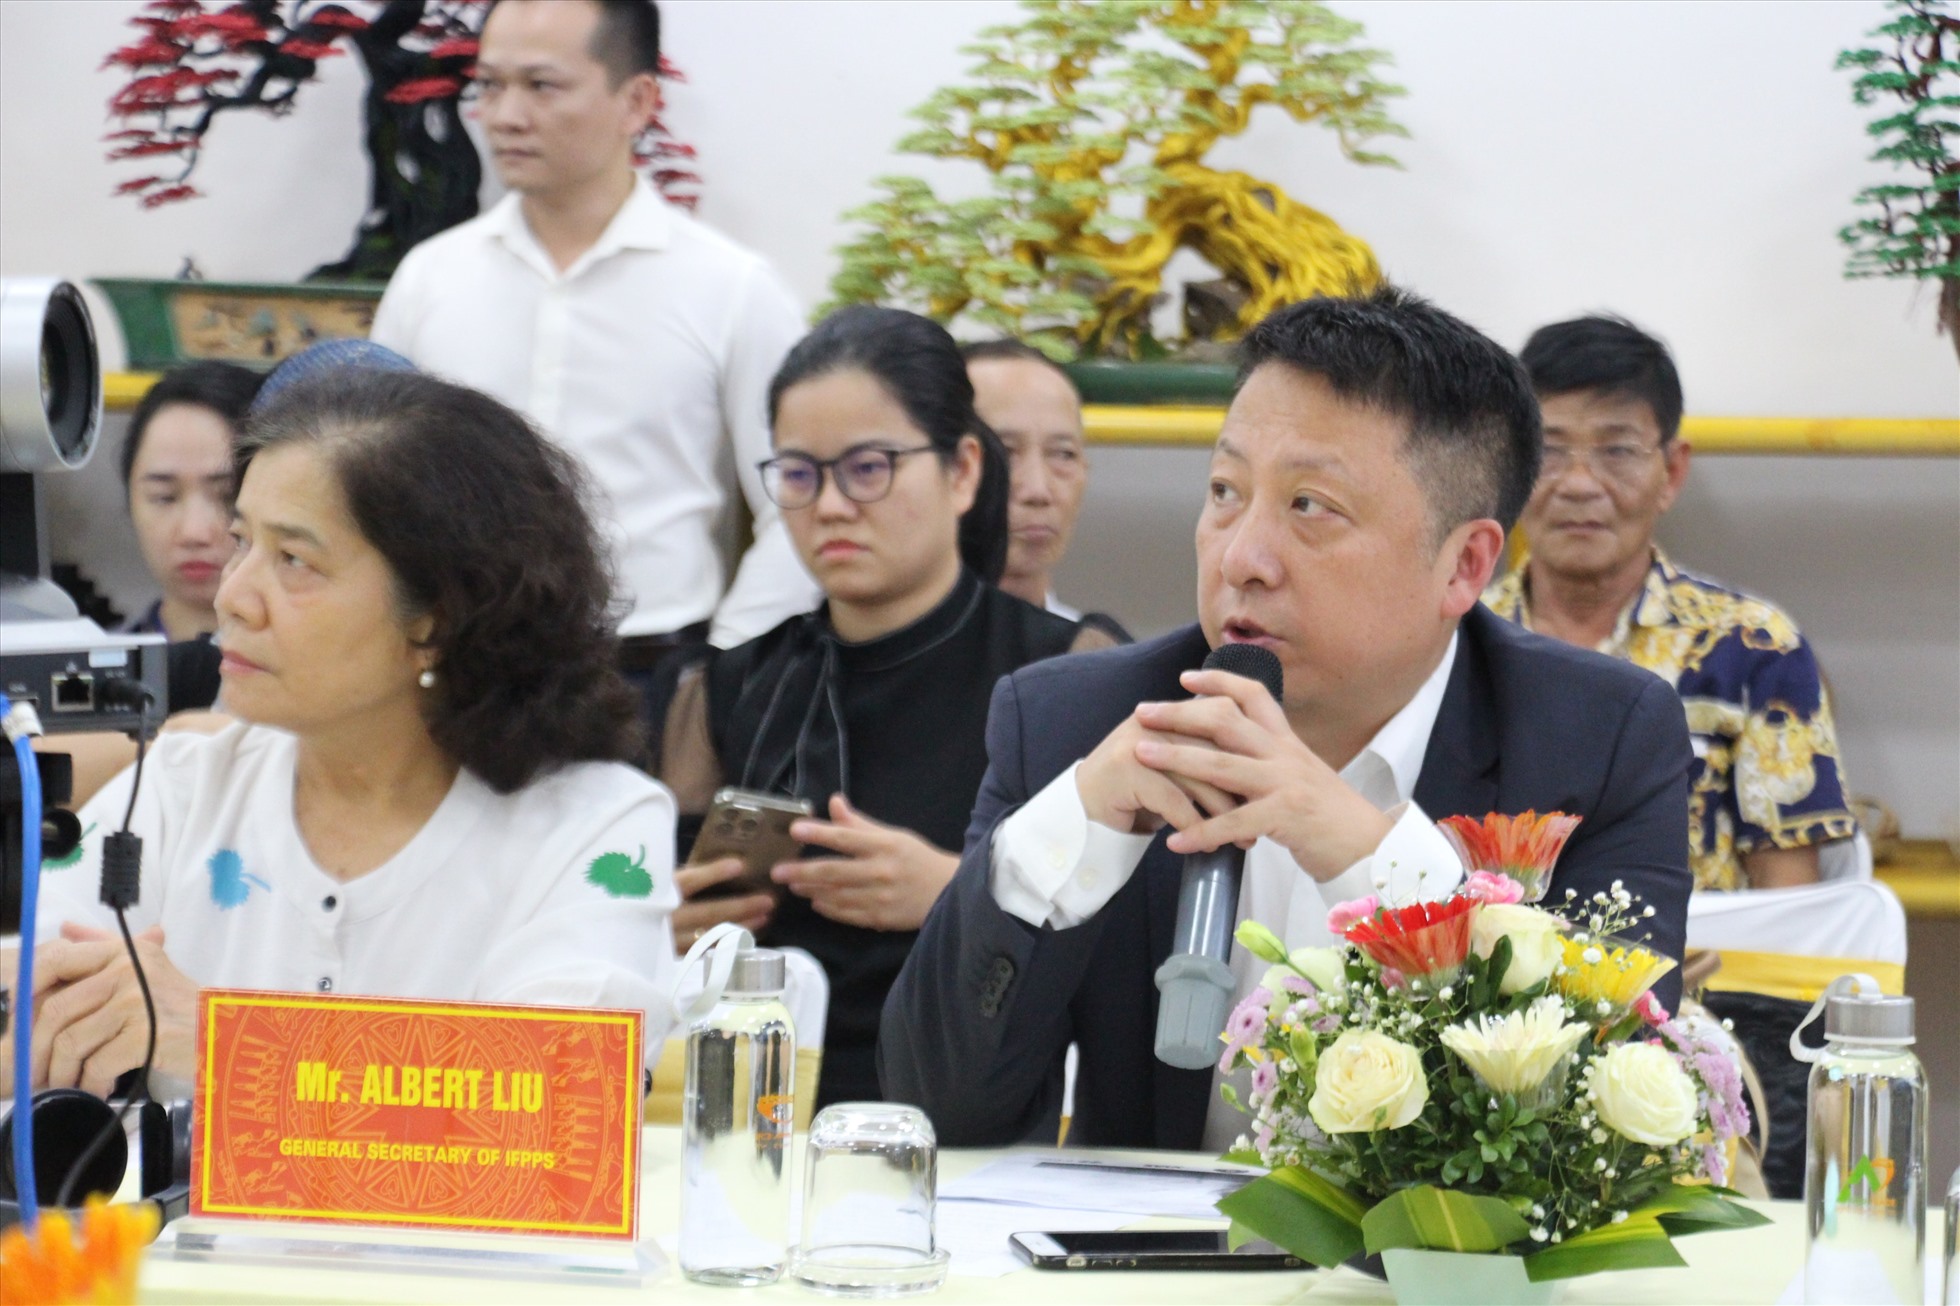 Ông Albert Lui - Tổng Thư ký Hiệp hội nhà mua Quốc tế (IFPPS) cảnh báo về thị trường nông sản xuất sang Trung Quốc. Ảnh: Bùi Yến